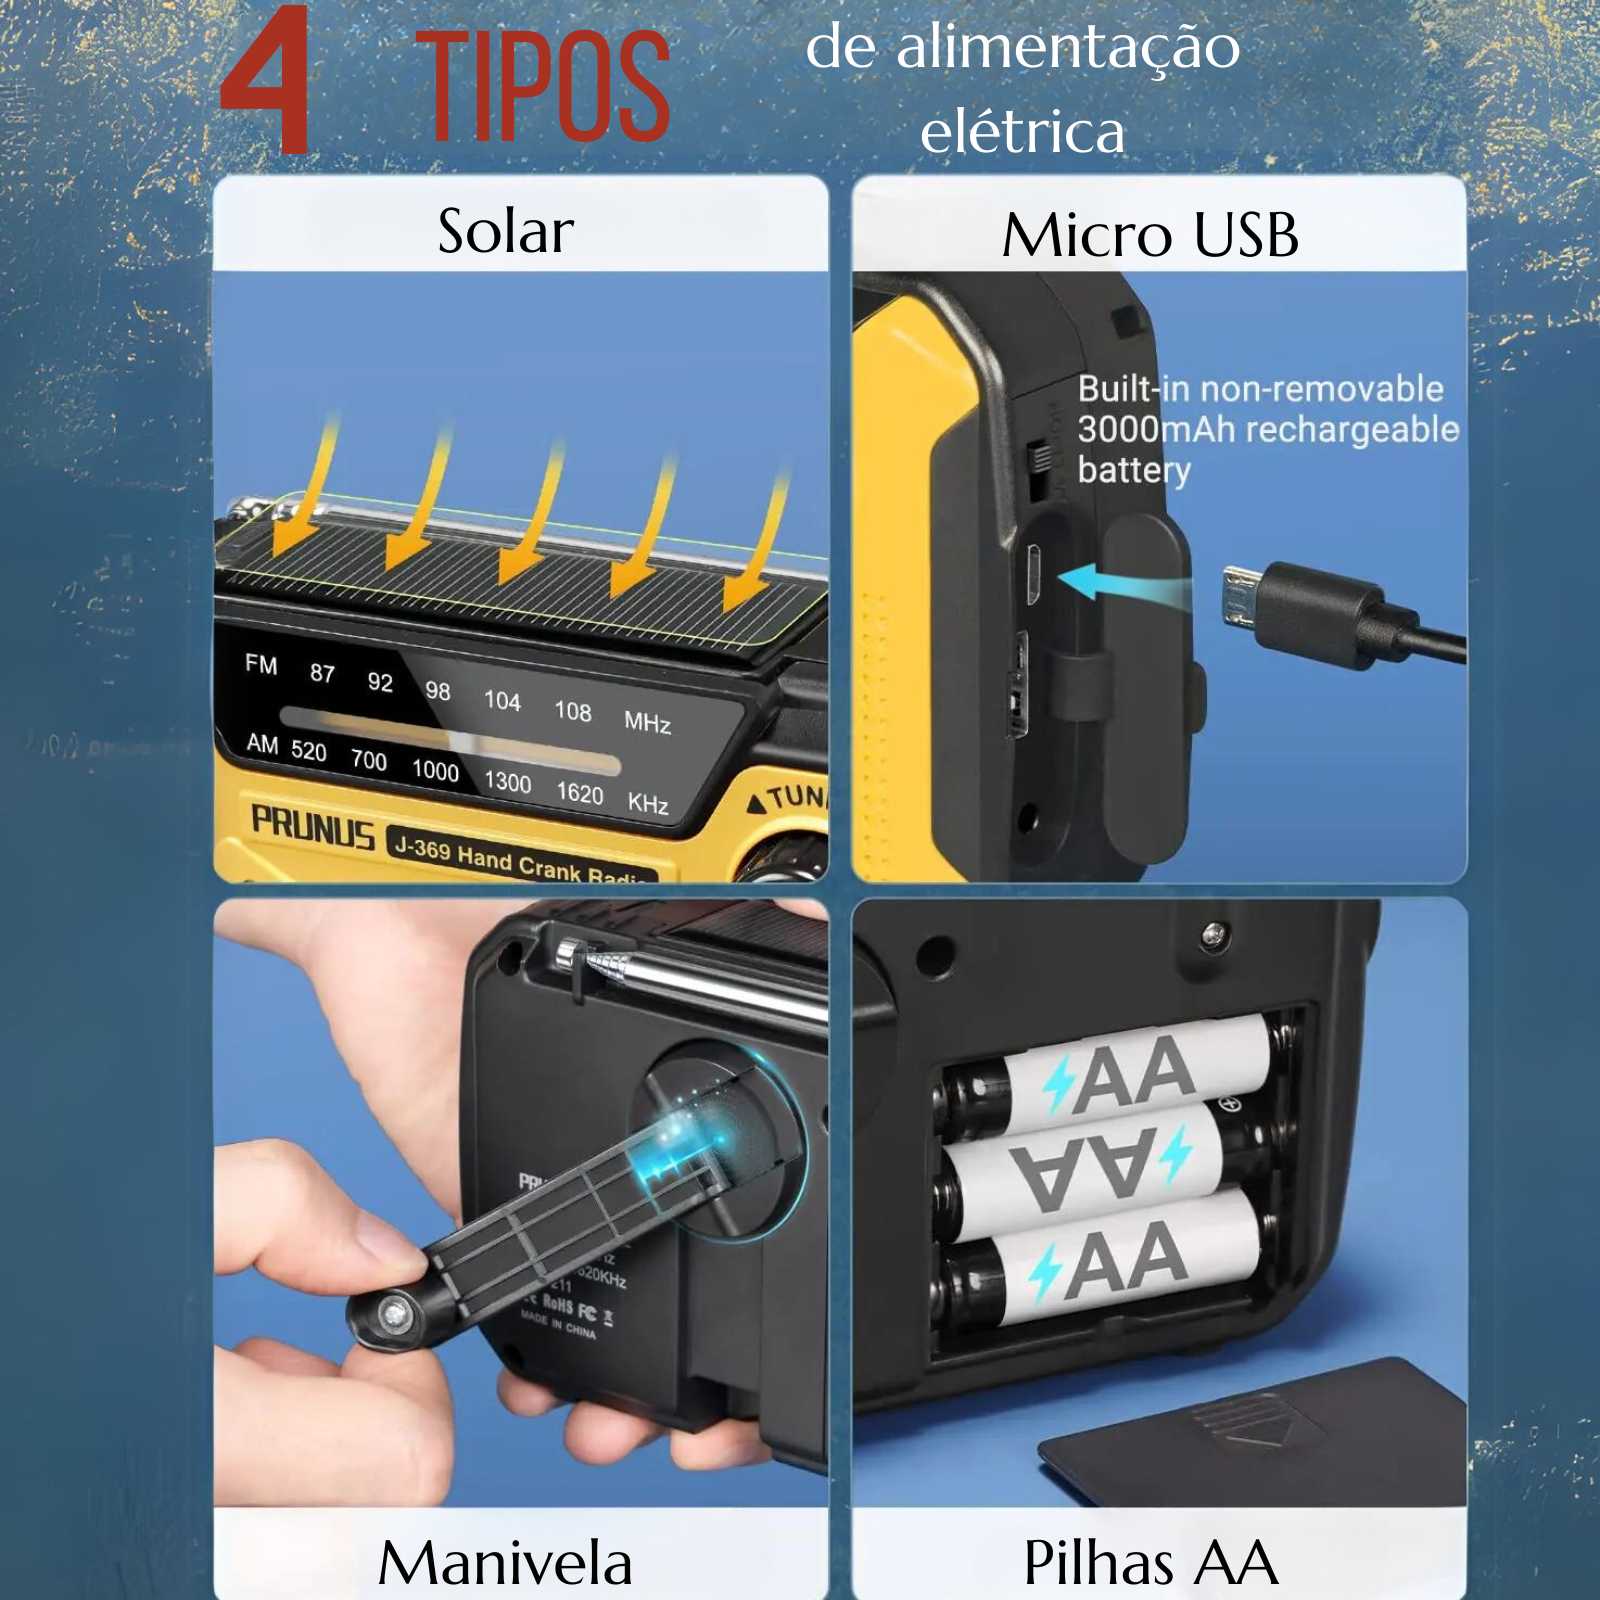 Rádio Portátil de Emergência AM/FM, Manivela, USB, Pilhas AA - Recarregável